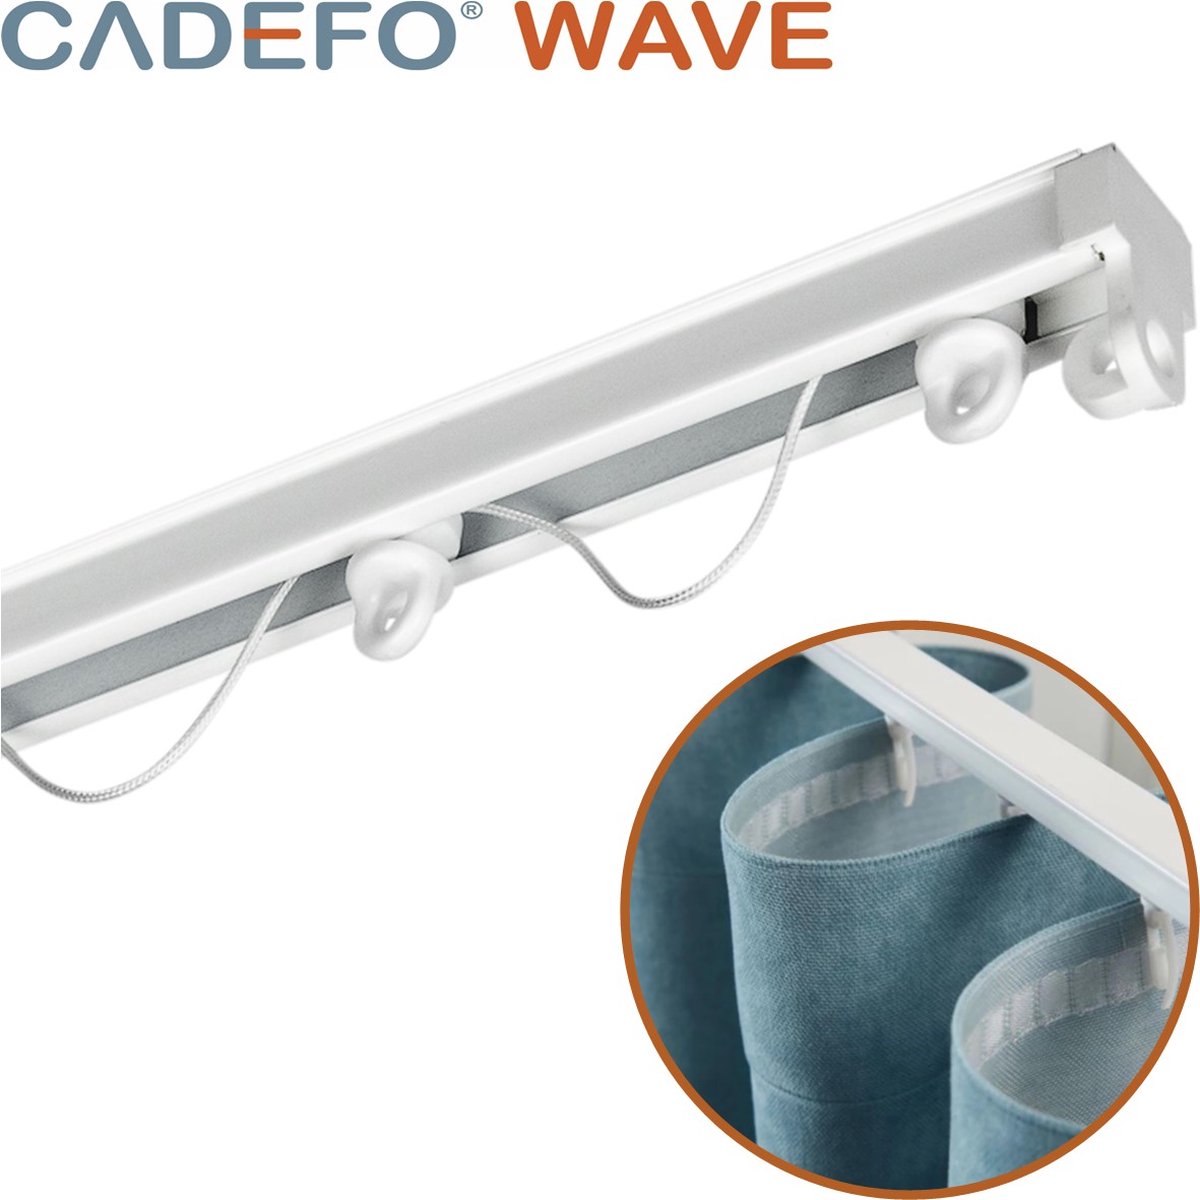 CADEFO WAVE (401 - 450 cm) Gordijnrails - Compleet op maat! - UIT 1 STUK - Leverbaar tot 6 meter - Plafondbevestiging - Lengte 430 cm